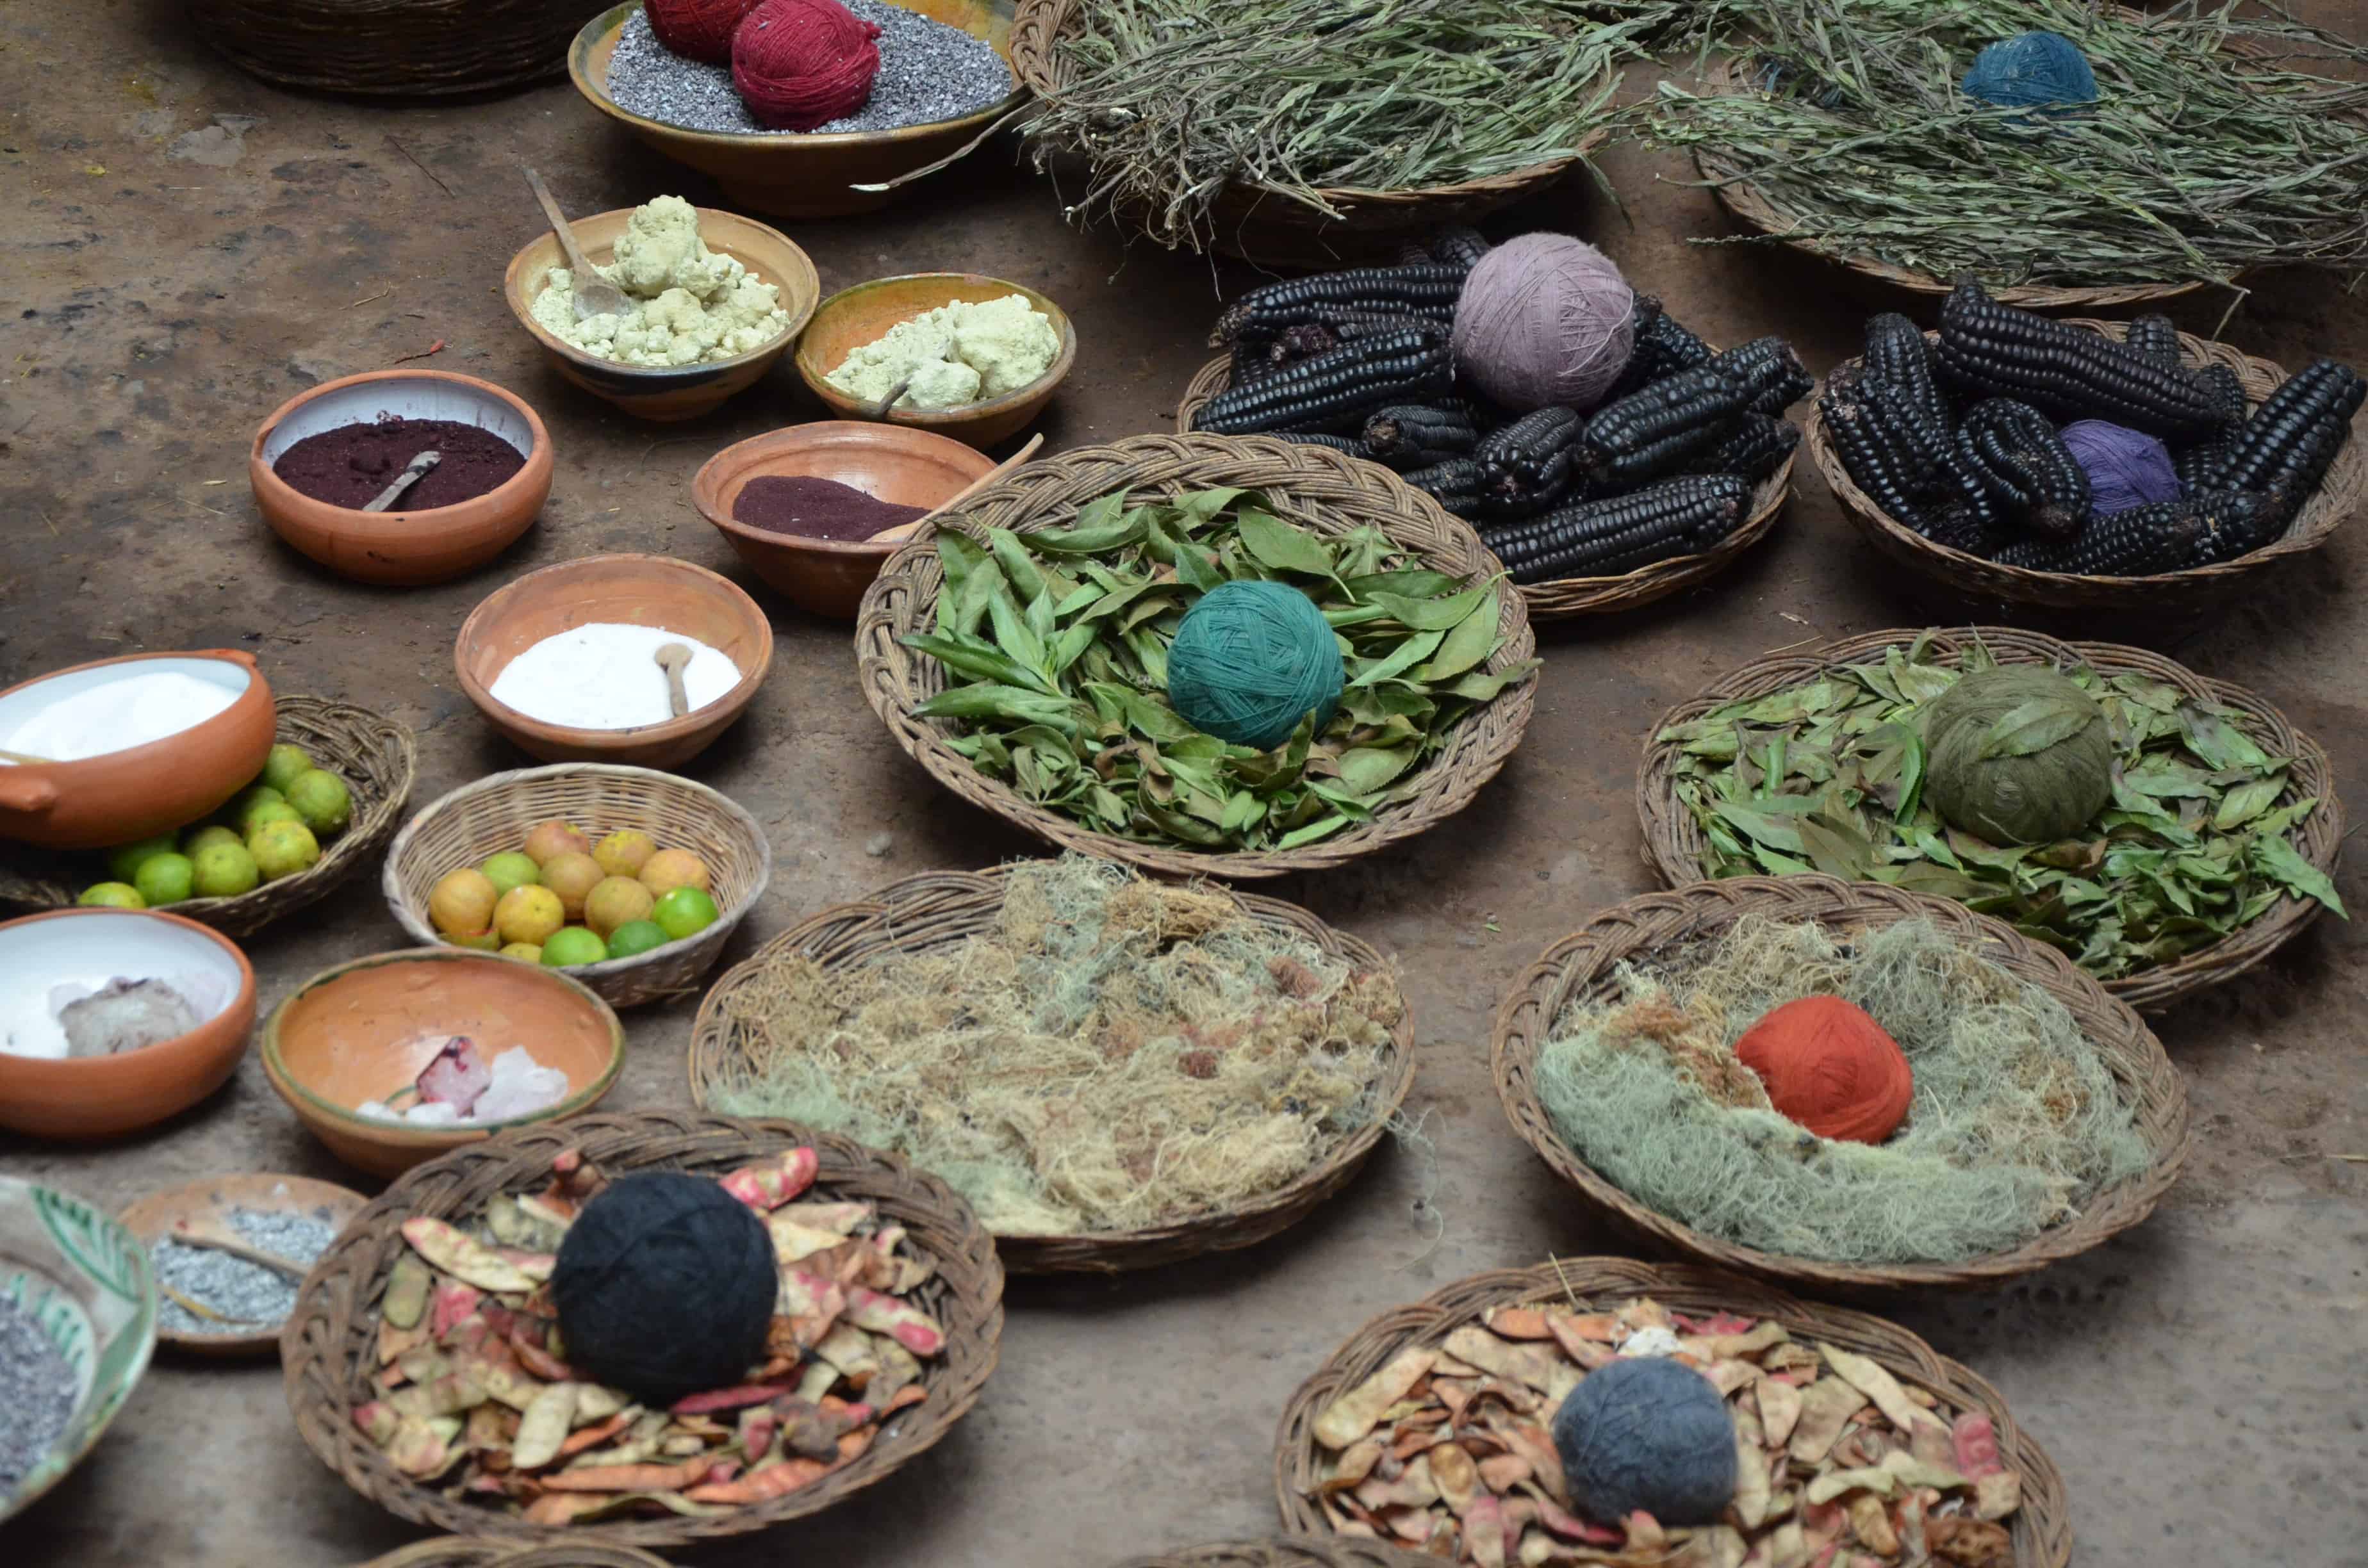 Chinchero craft market in Peru